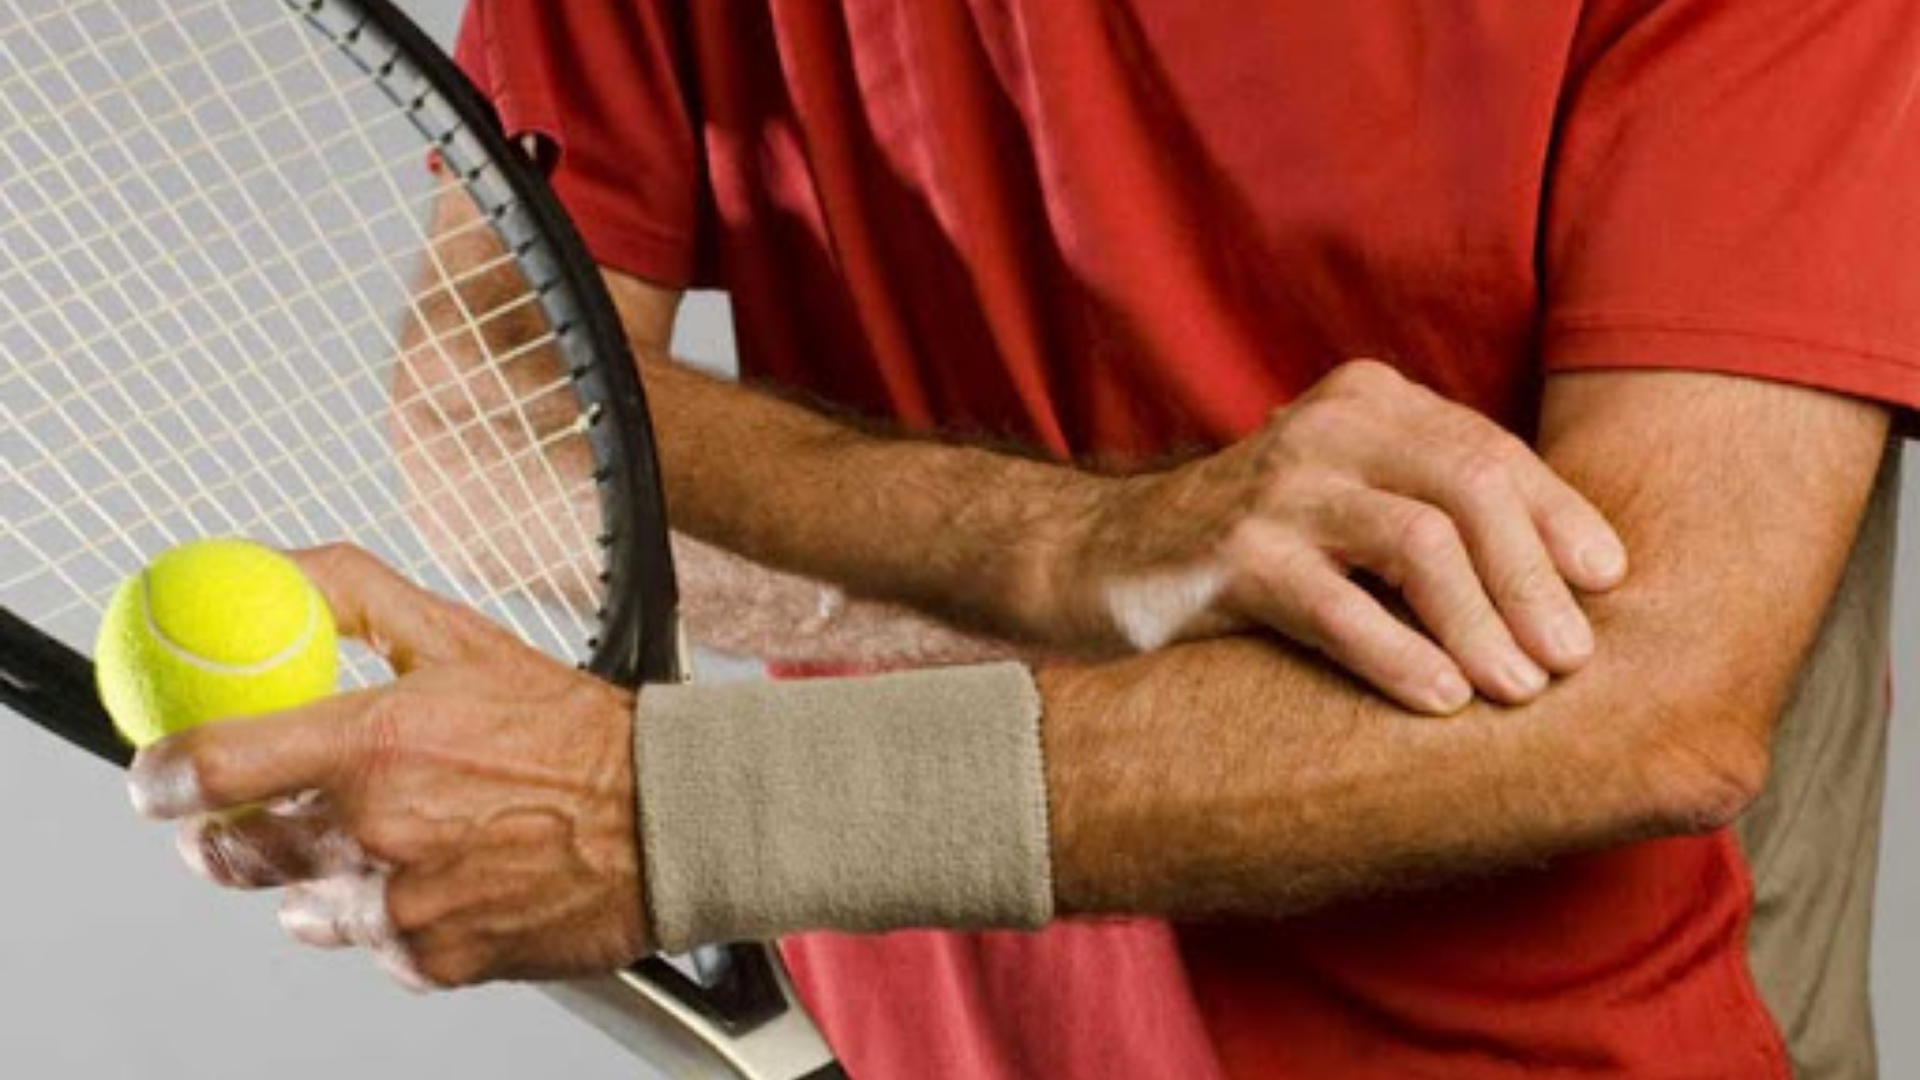 Tenisçi dirseği olan bir sporcunun görseli.